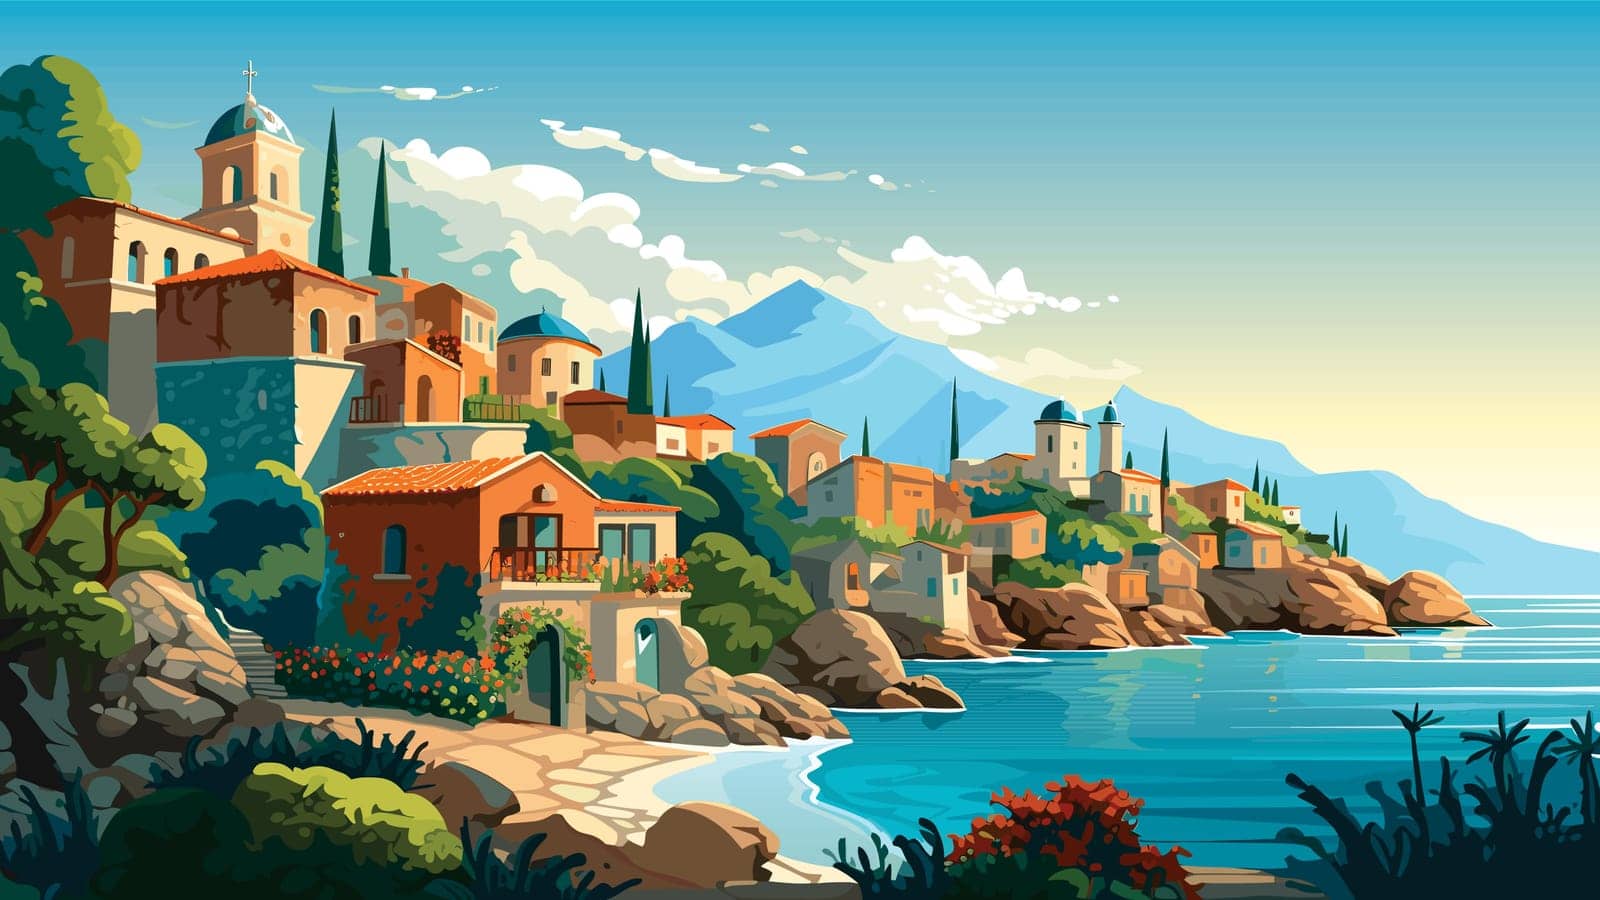 Mediterranean Village Landscape by Malchev